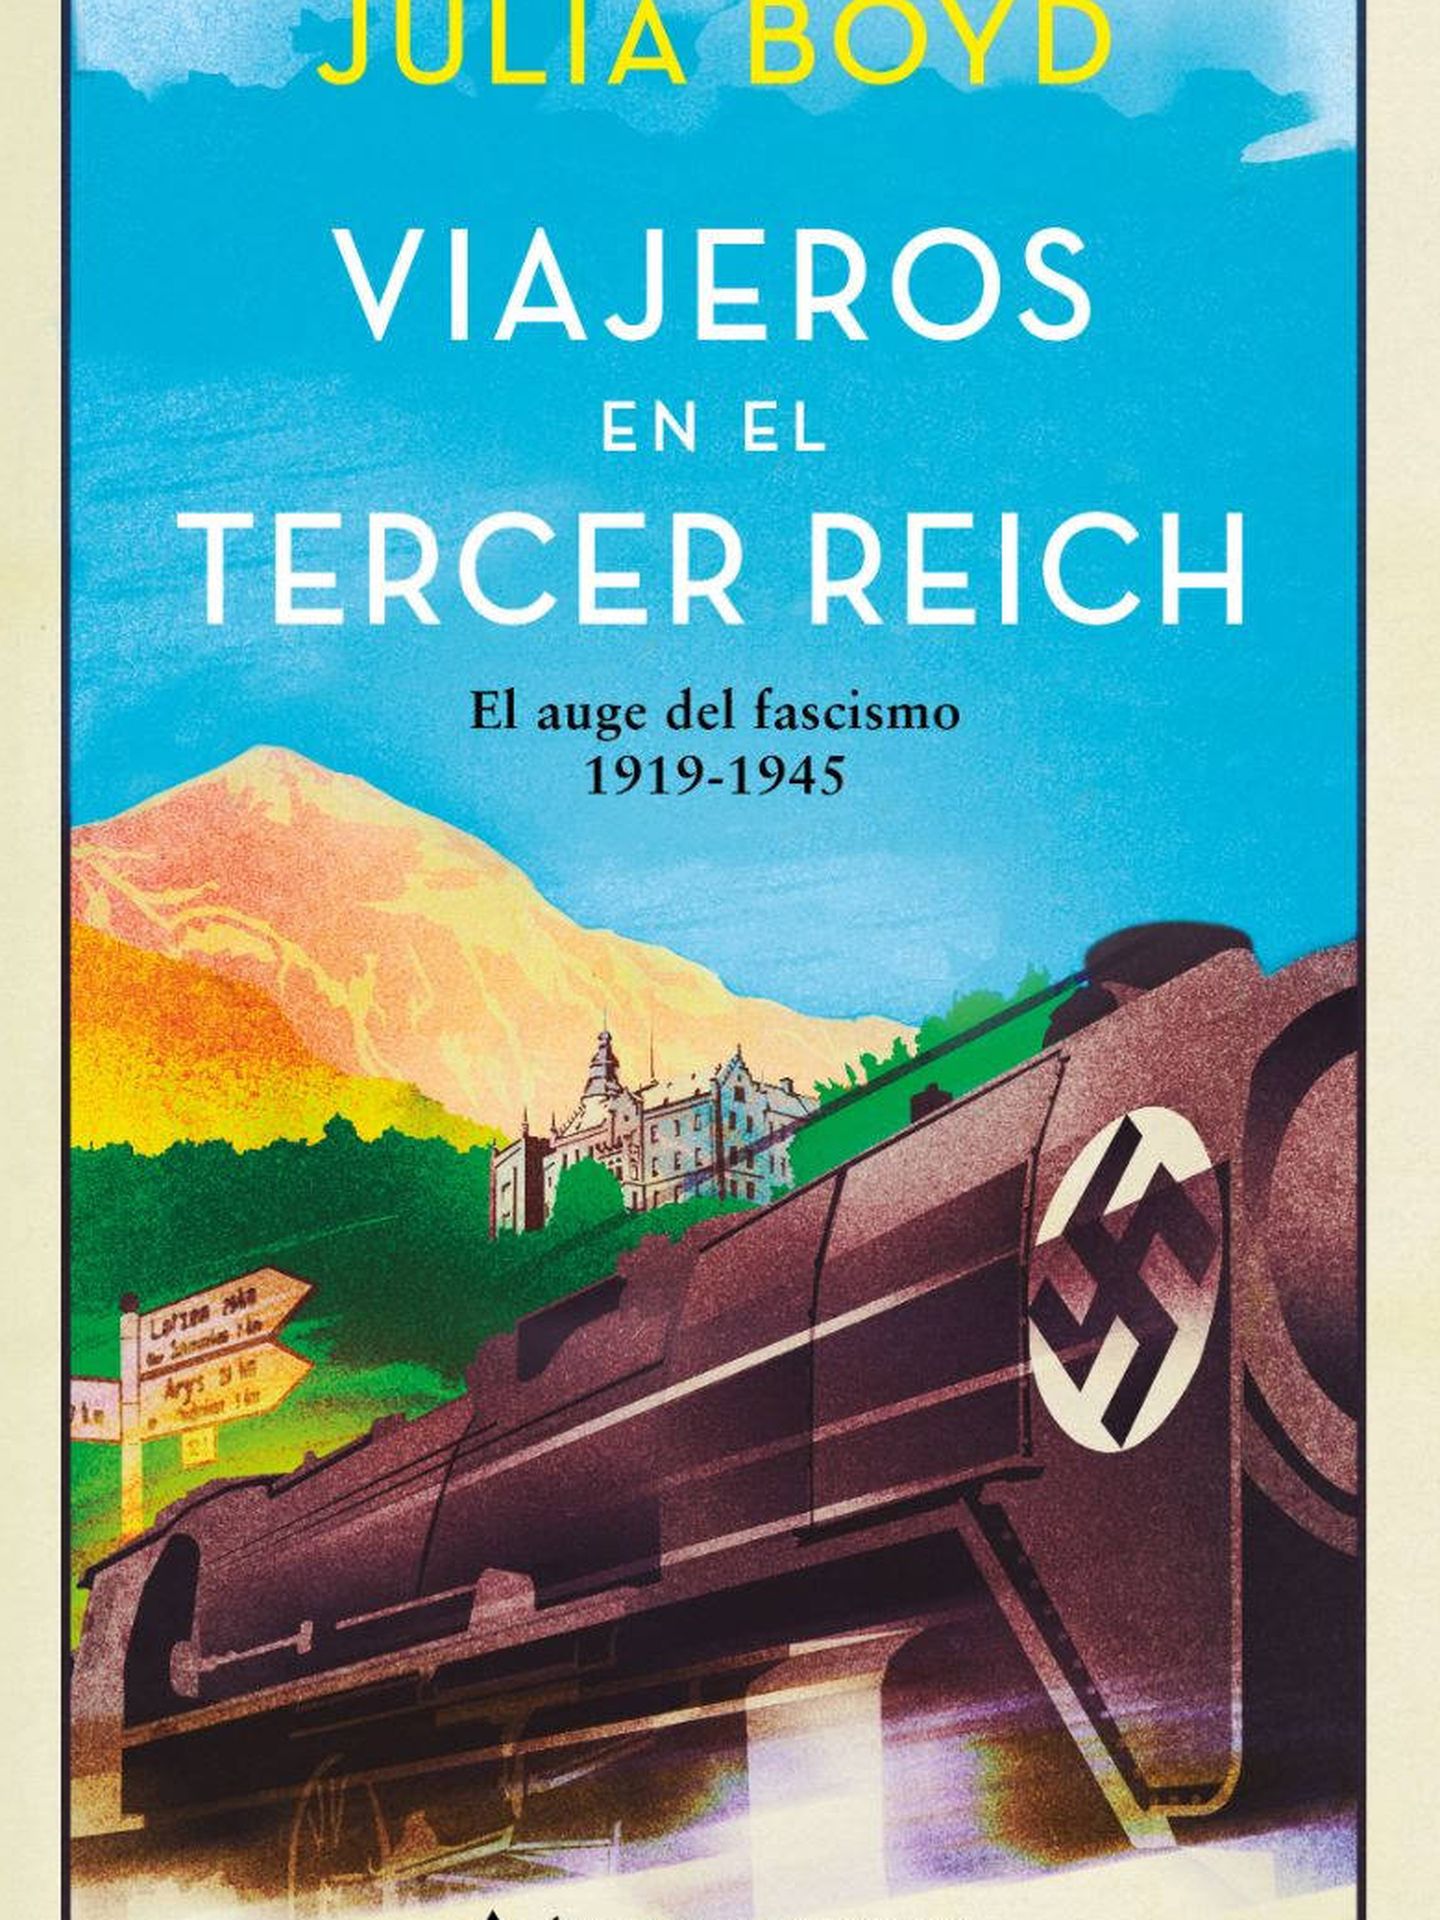 'Viajeros en el Tercer Reich'